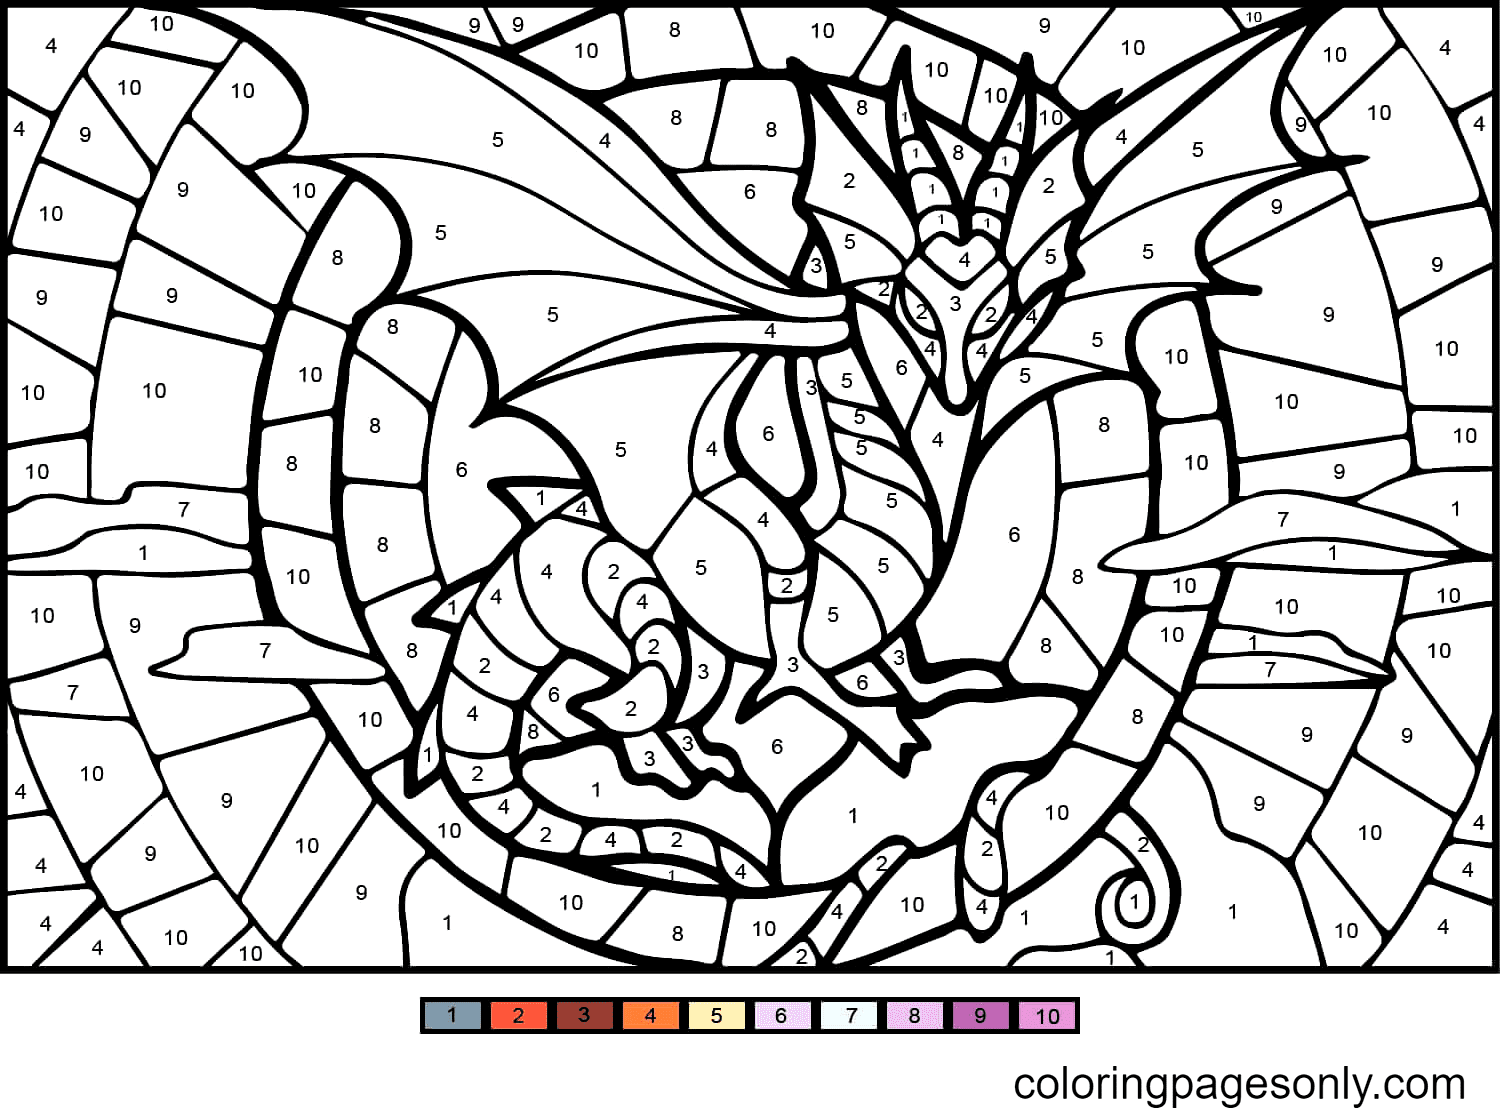 Colore del drago per numero da colorare